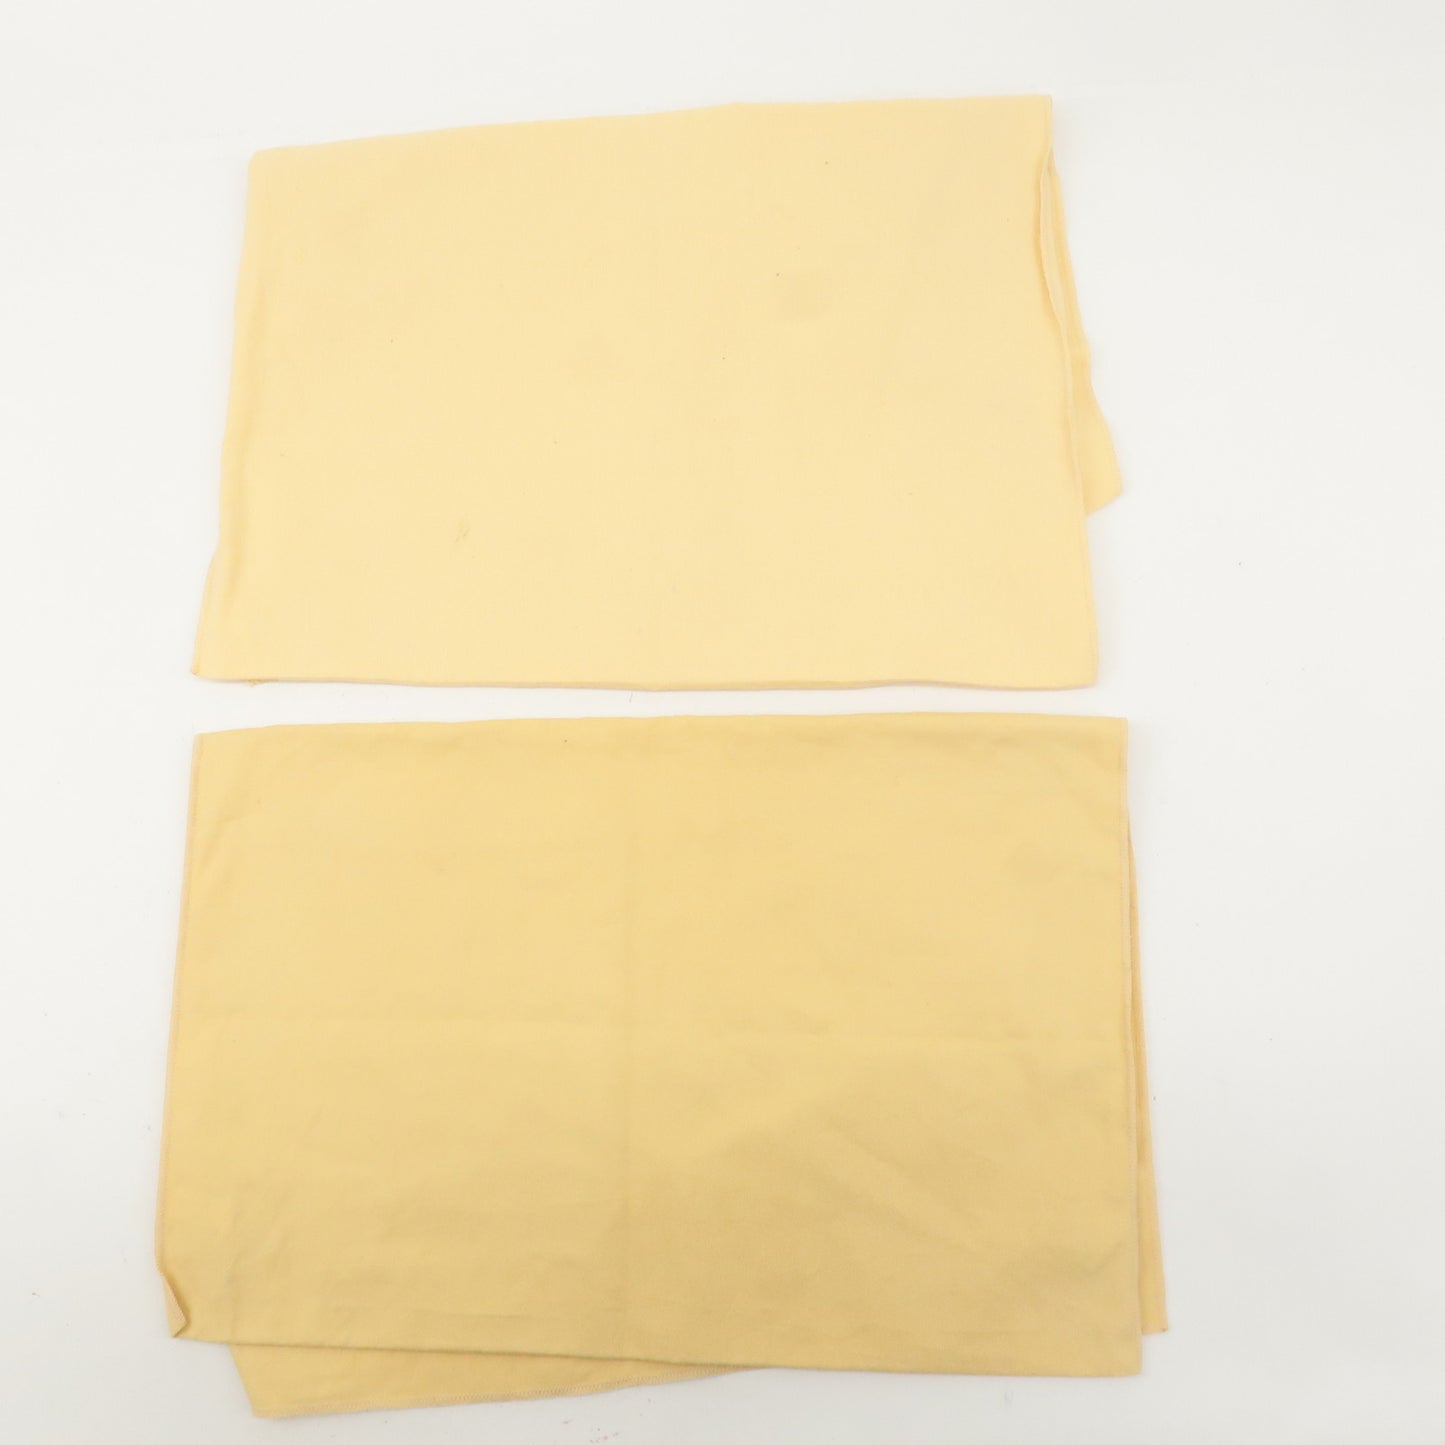 Louis Vuitton Set of 10 Dust Bag Storage Bag Flap Beige